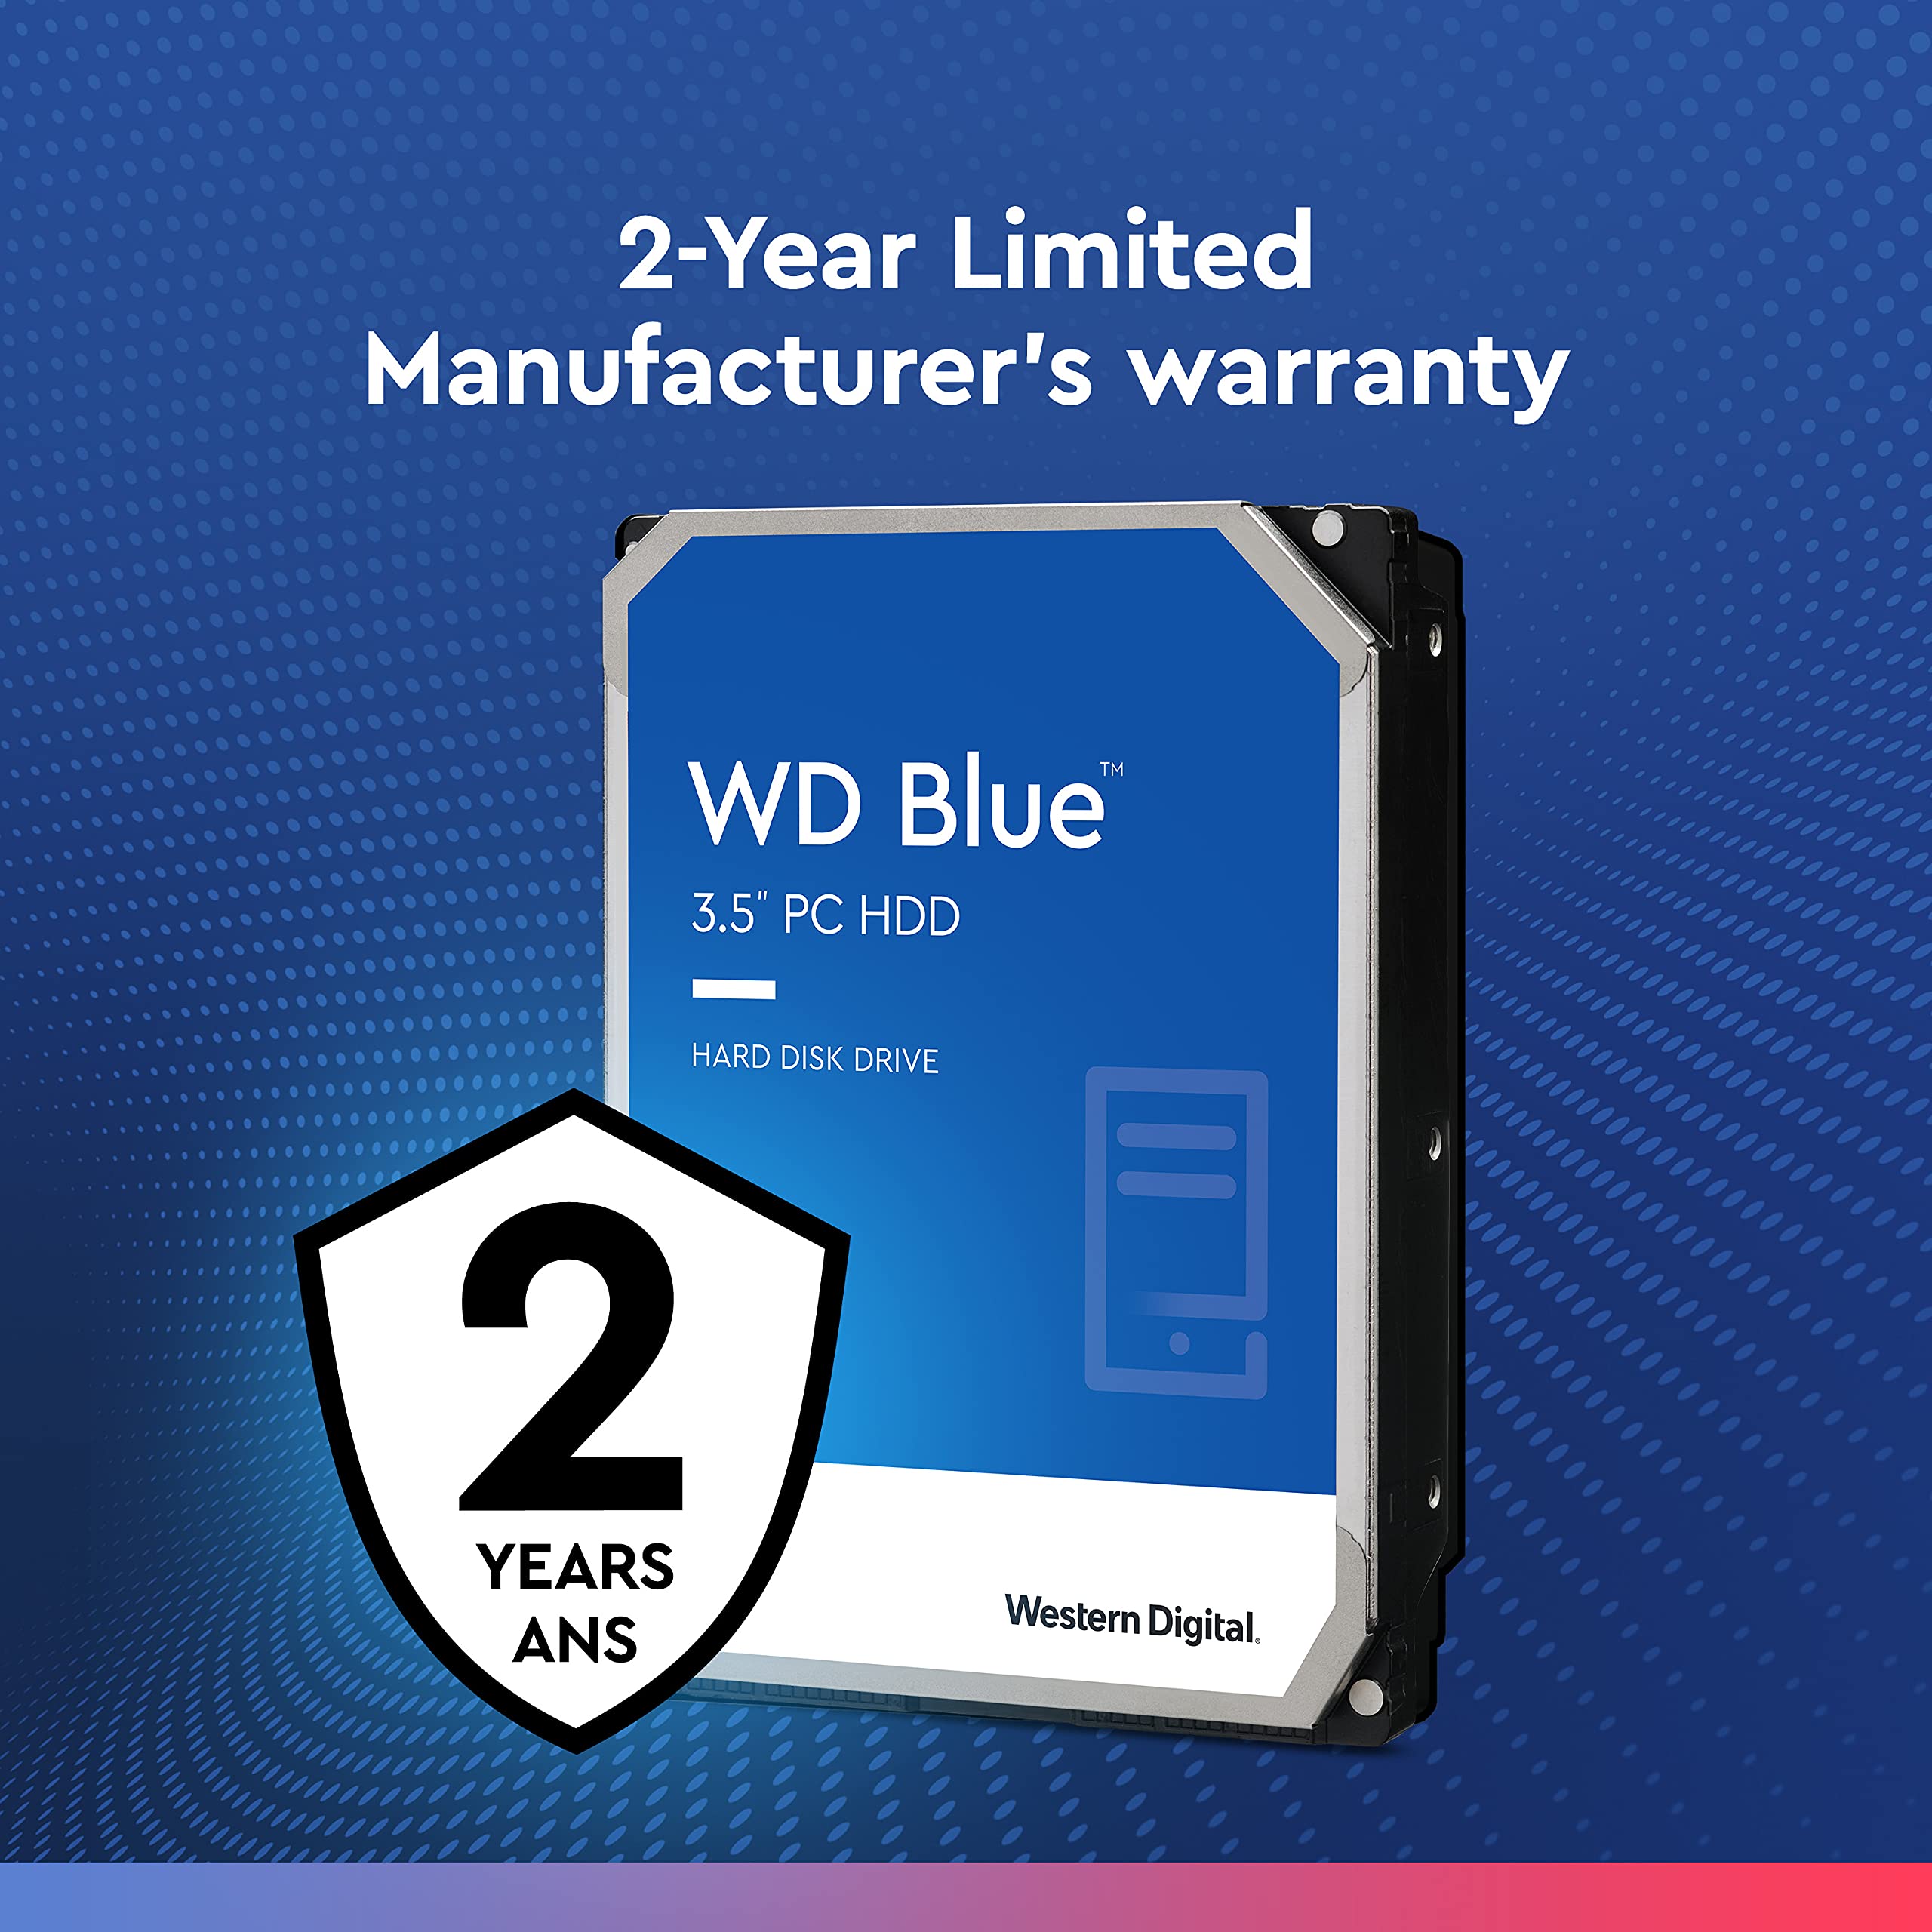 Western Digital 1TB WD Blue PC Internal Hard Drive HDD - 7200 RPM, SATA 6 Gb/s, 64 MB Cache, 3.5